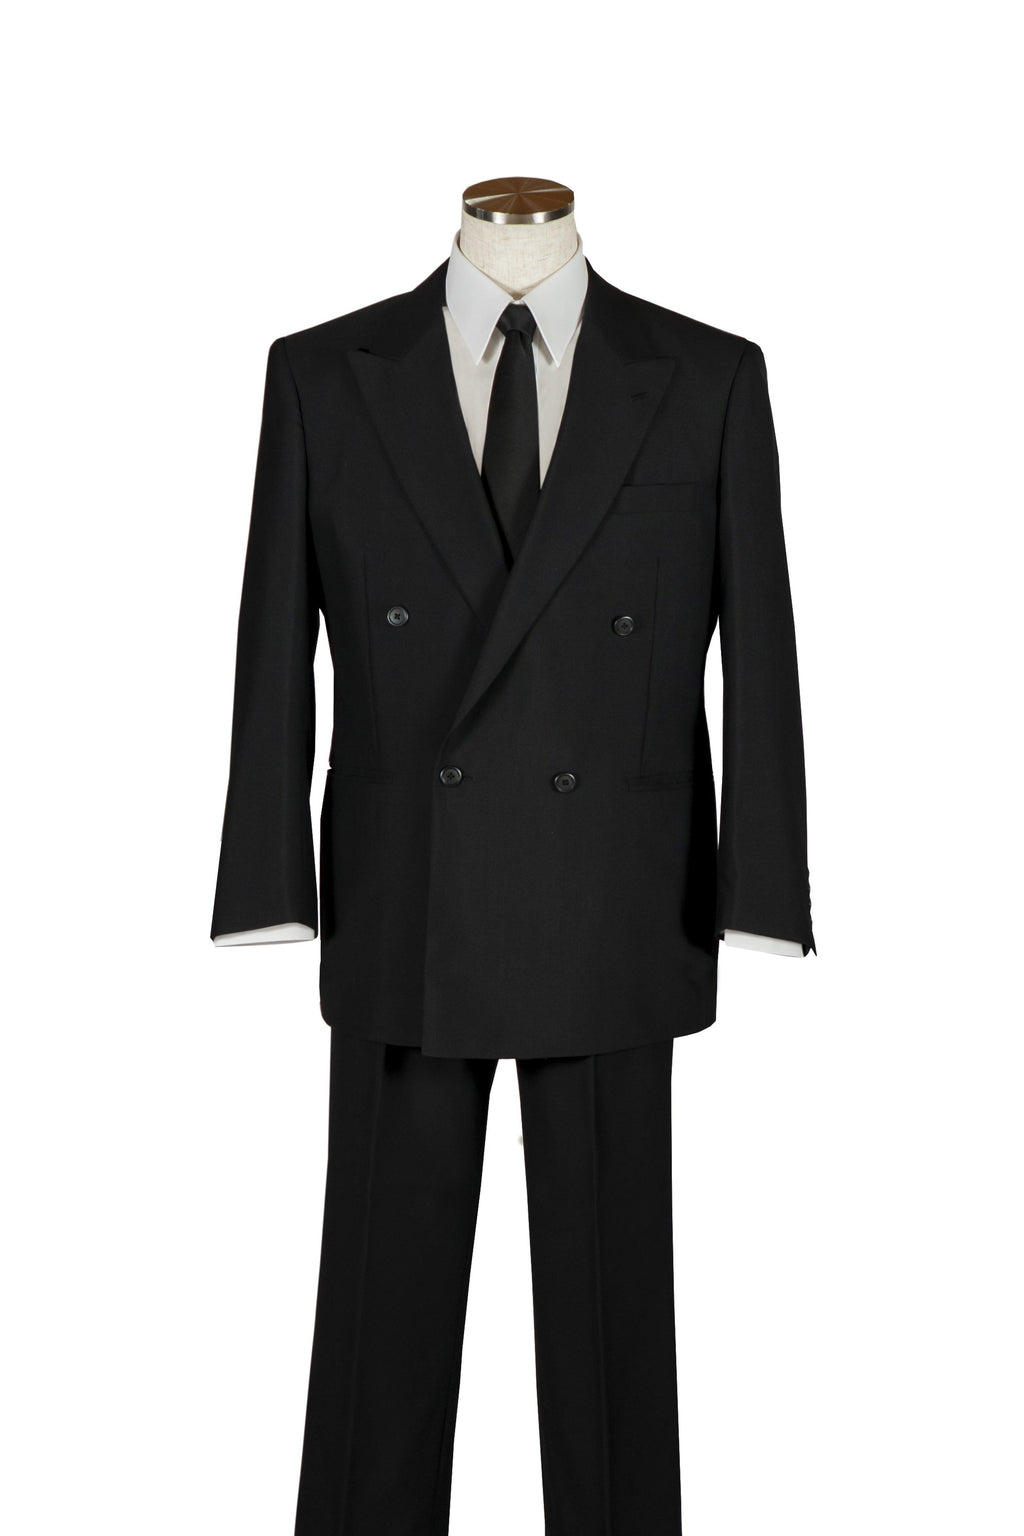 紳士 喪服・礼服のレンタル商品 名古屋市の方には当日届きます。商品内容はジャケット・ズボン・ネクタイ　上質の生地で漆黒色です